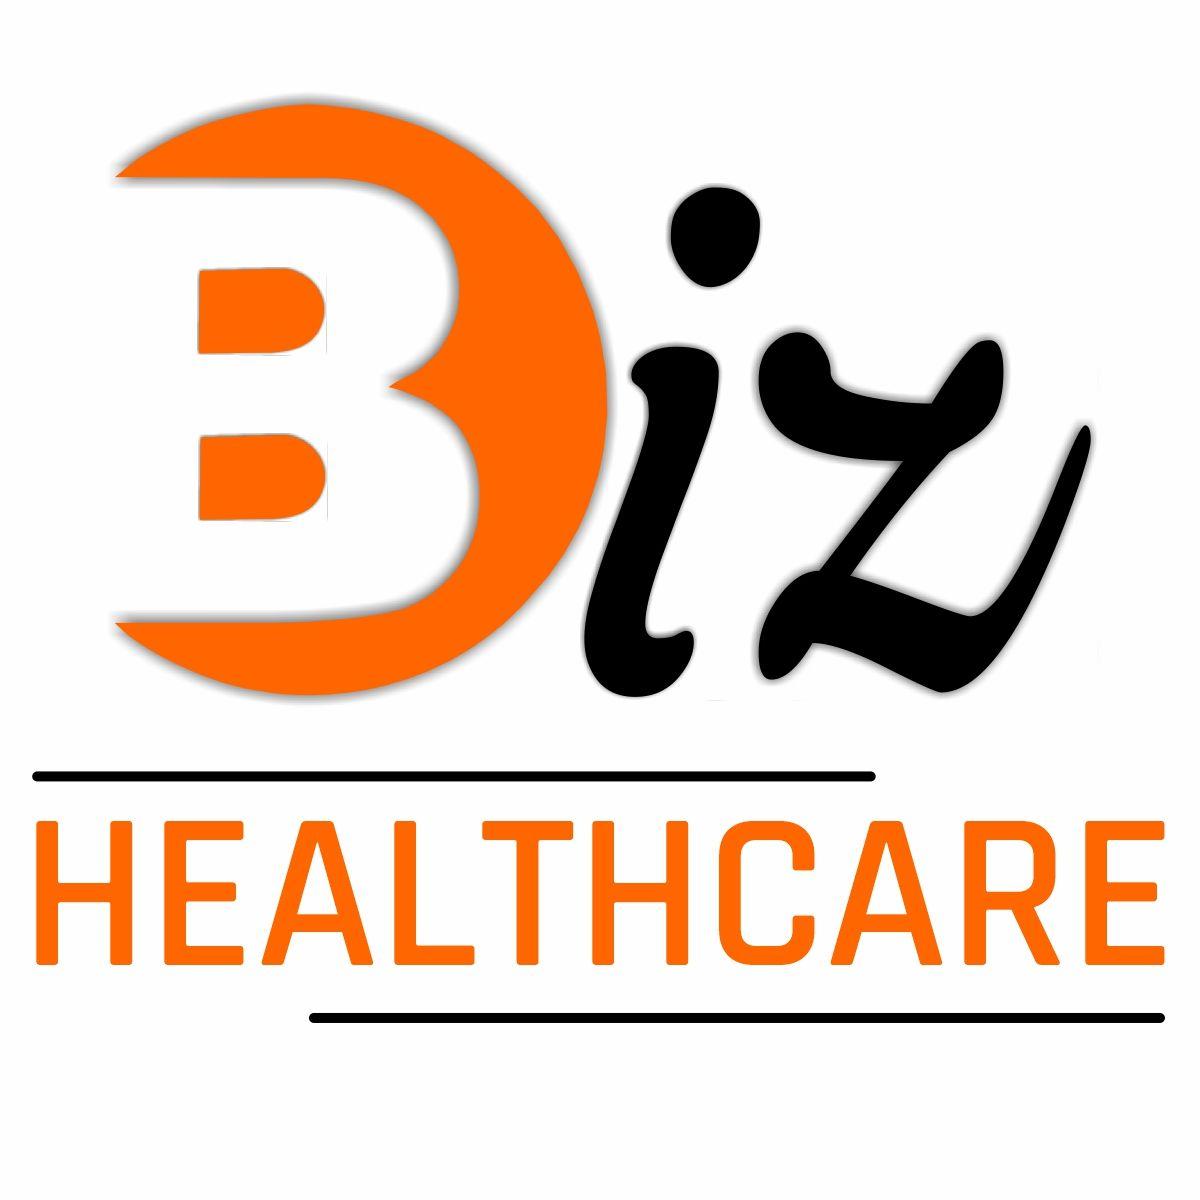 3biz healthcare private limited